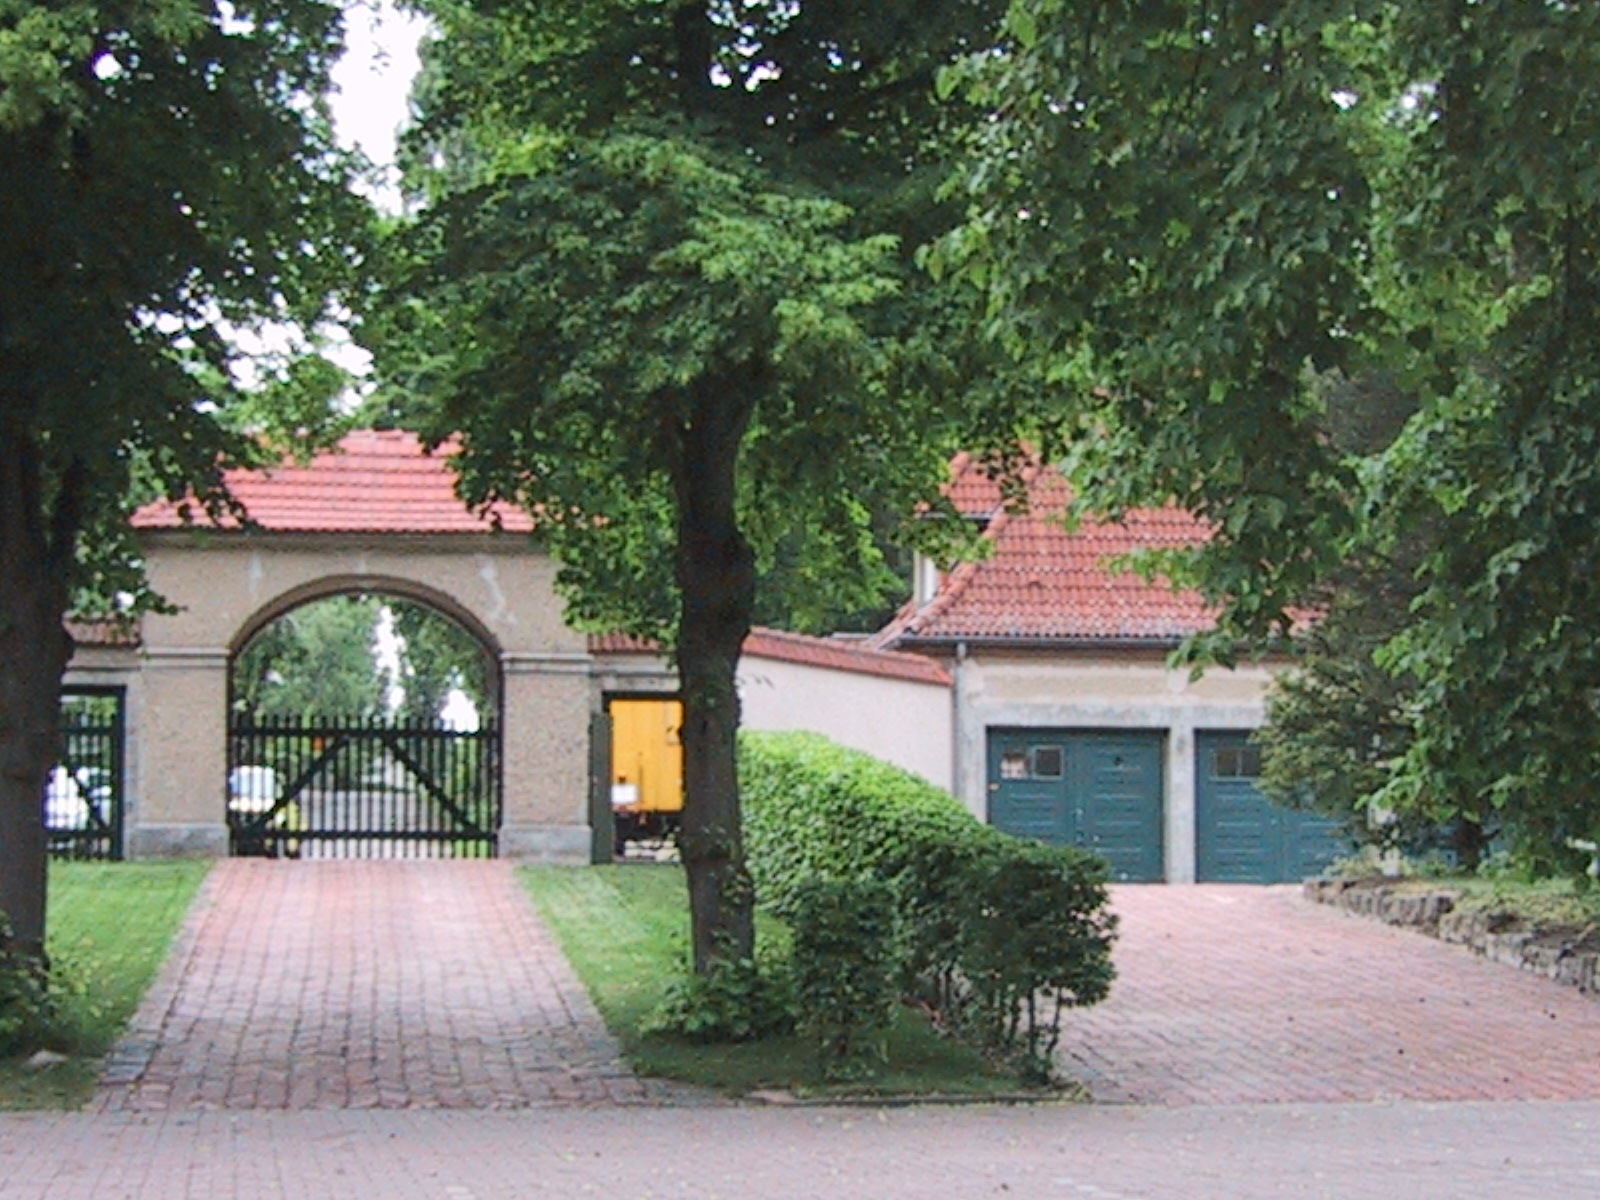 Kulturgarten Eingang innen